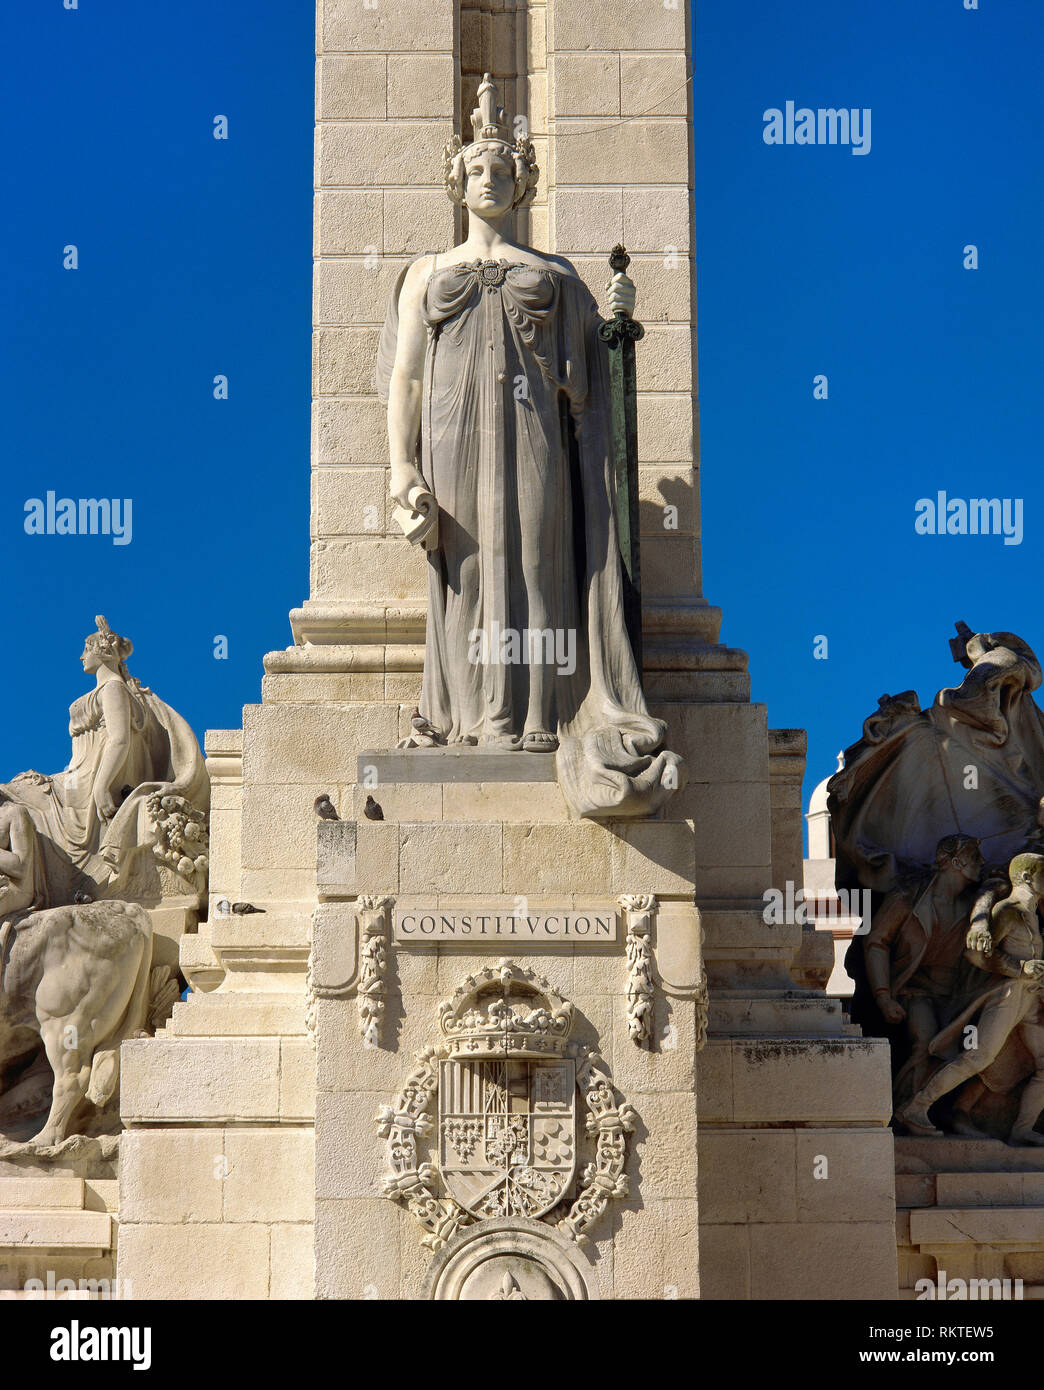 Spagna, Andalusia Cadiz. Monumento alla Costituzione del 1812. Fu eretto nel 1912, progettato da architetto Modesto Lopez Otero (1885-1962) e scultore Aniceto Marinas (1866-1953). Dettaglio. Piazza di Spagna. Foto Stock